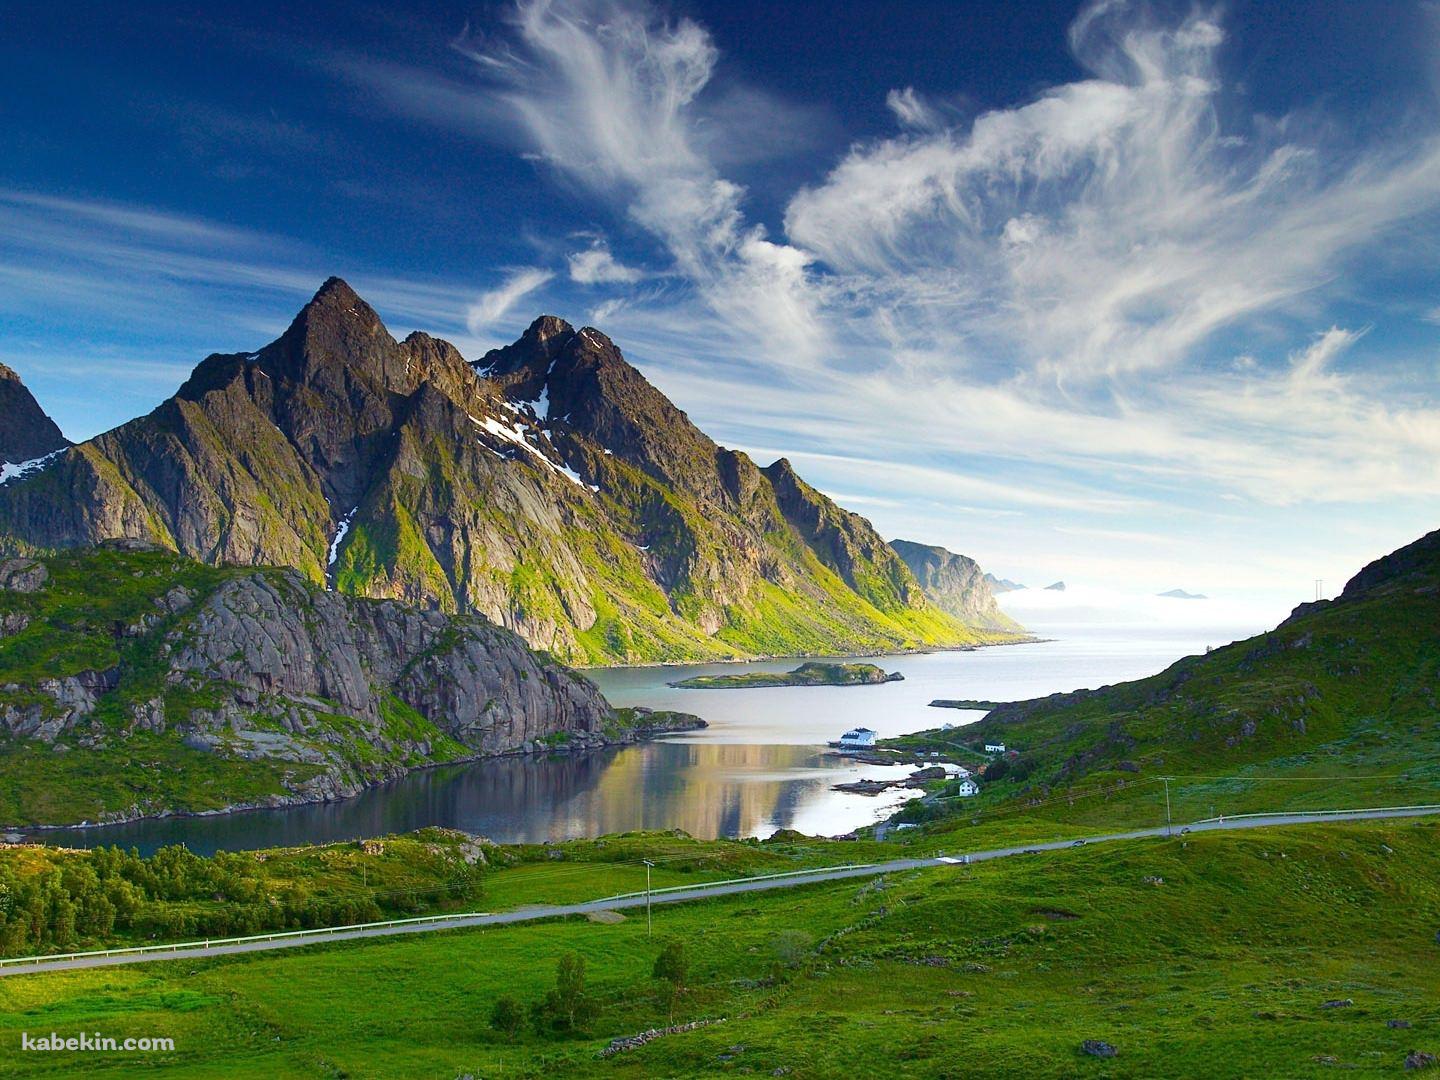 ノルウェーの美麗な景色の壁紙(1440px x 1080px) 高画質 PC・デスクトップ用